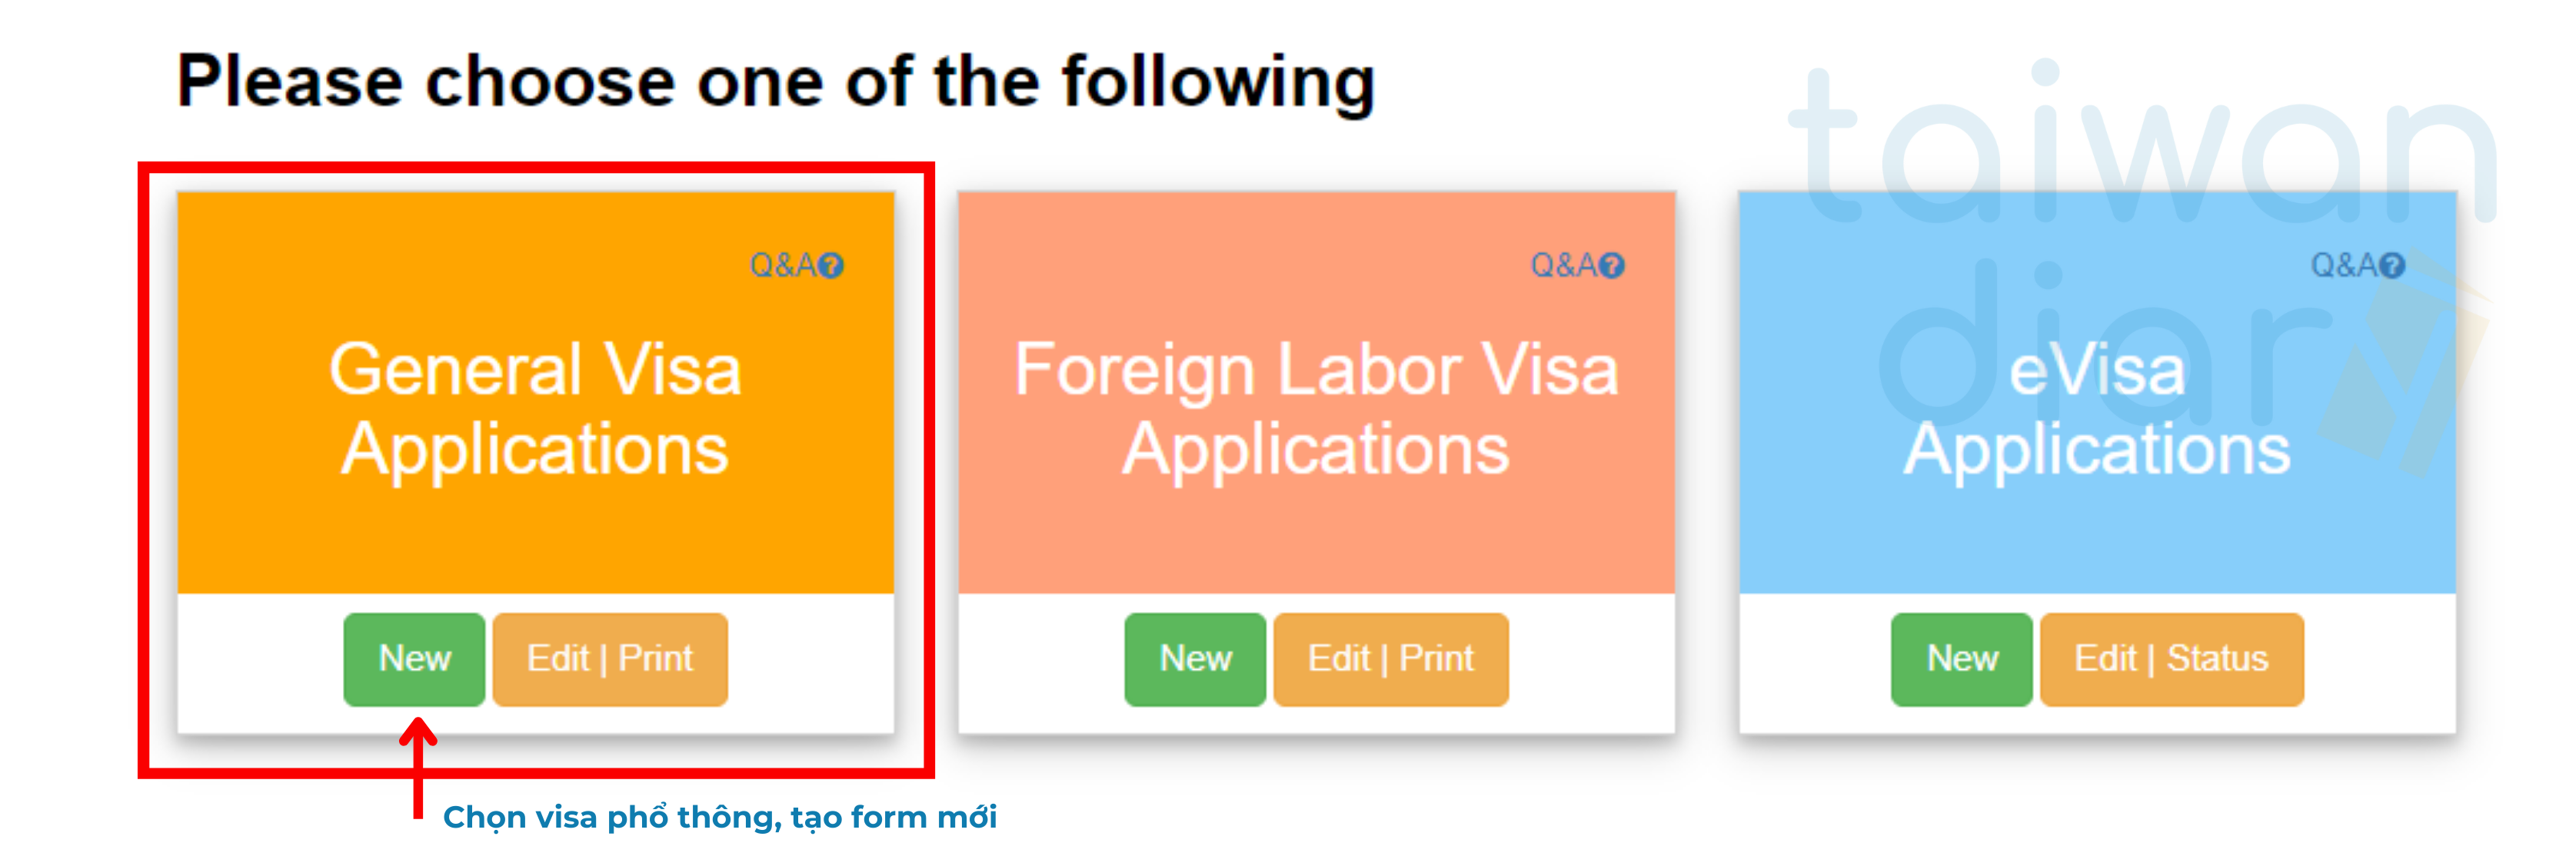 Tờ khai xin Visa du học Đài Loan